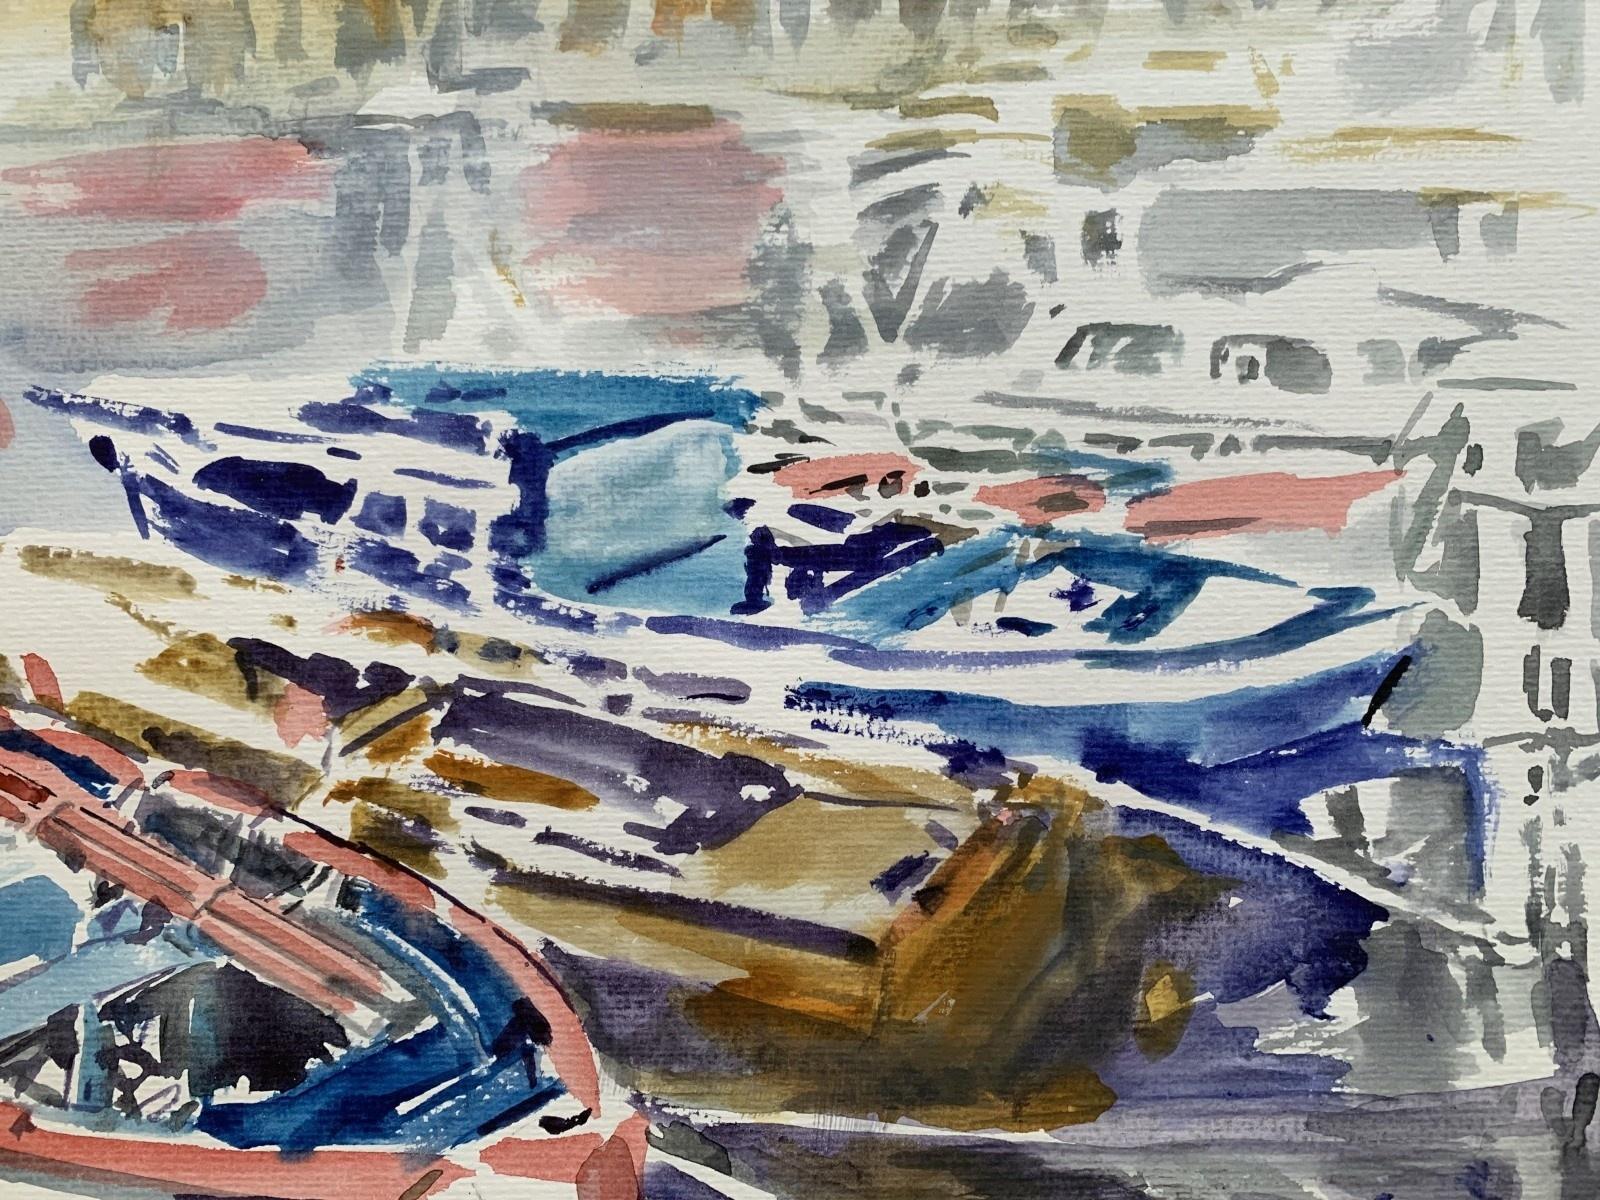 In a harbour. Watercolor, Realistic, Classic, Marine, Polish artist - Gray Figurative Art by Włodzimierz Karczmarzyk